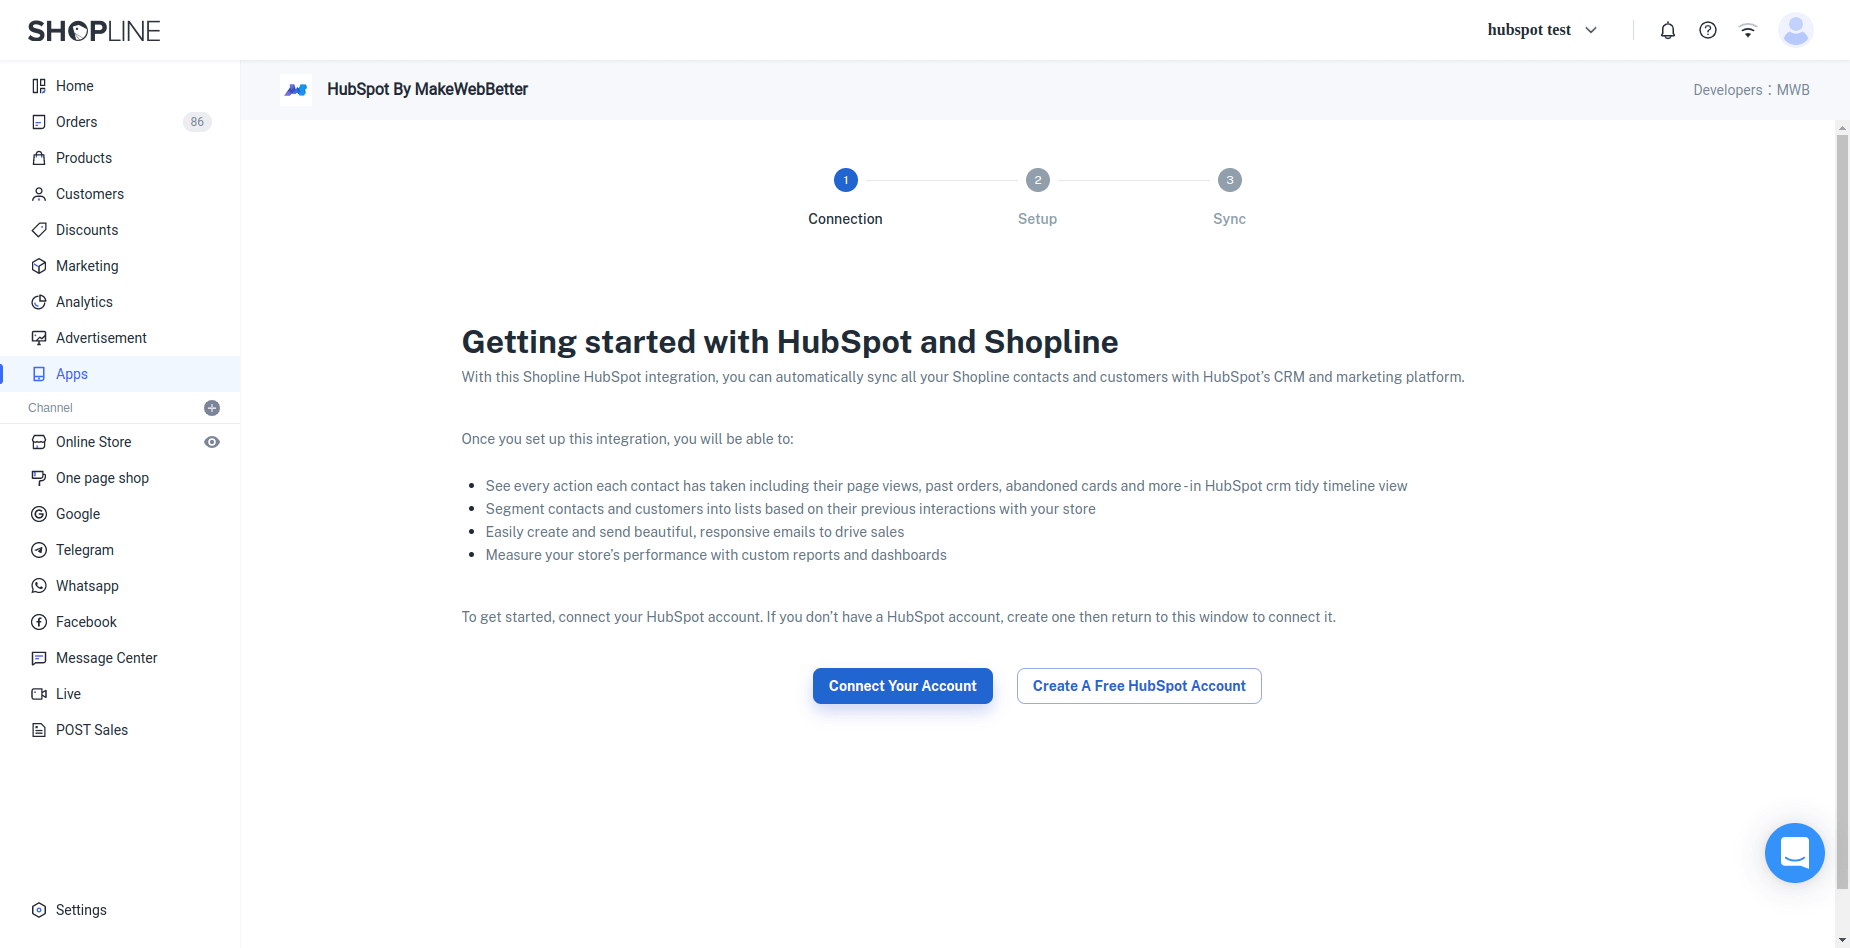 HubSpot Shopline Integration